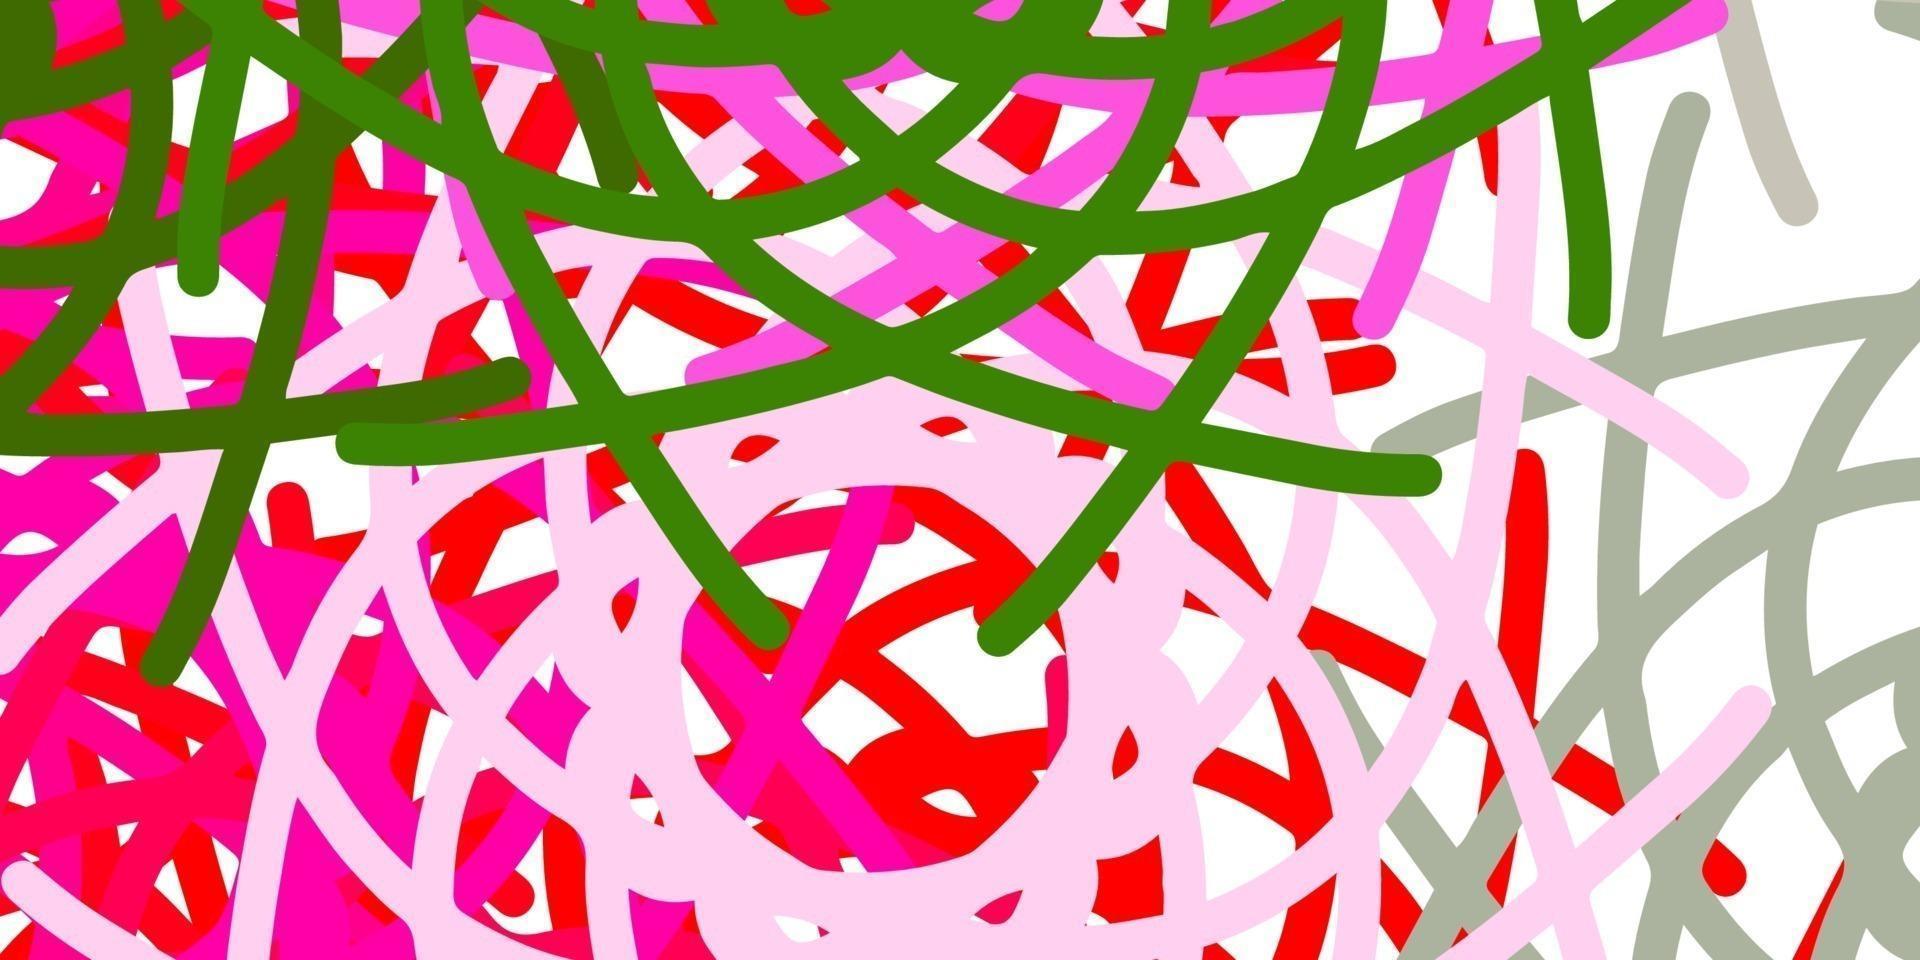 toile de fond de vecteur rose clair, vert avec des formes chaotiques.